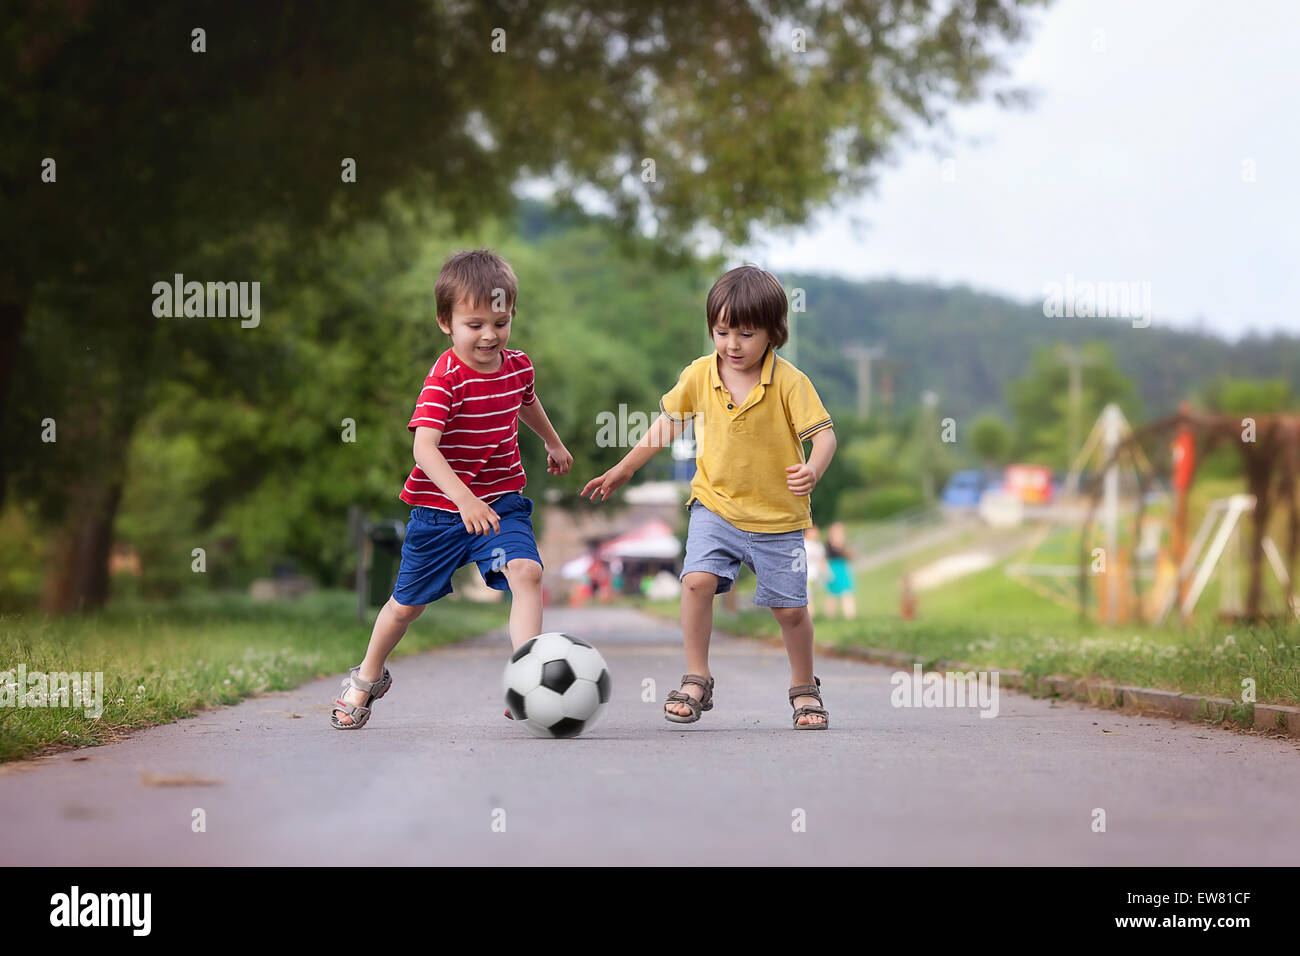 Играют в футбол в парке